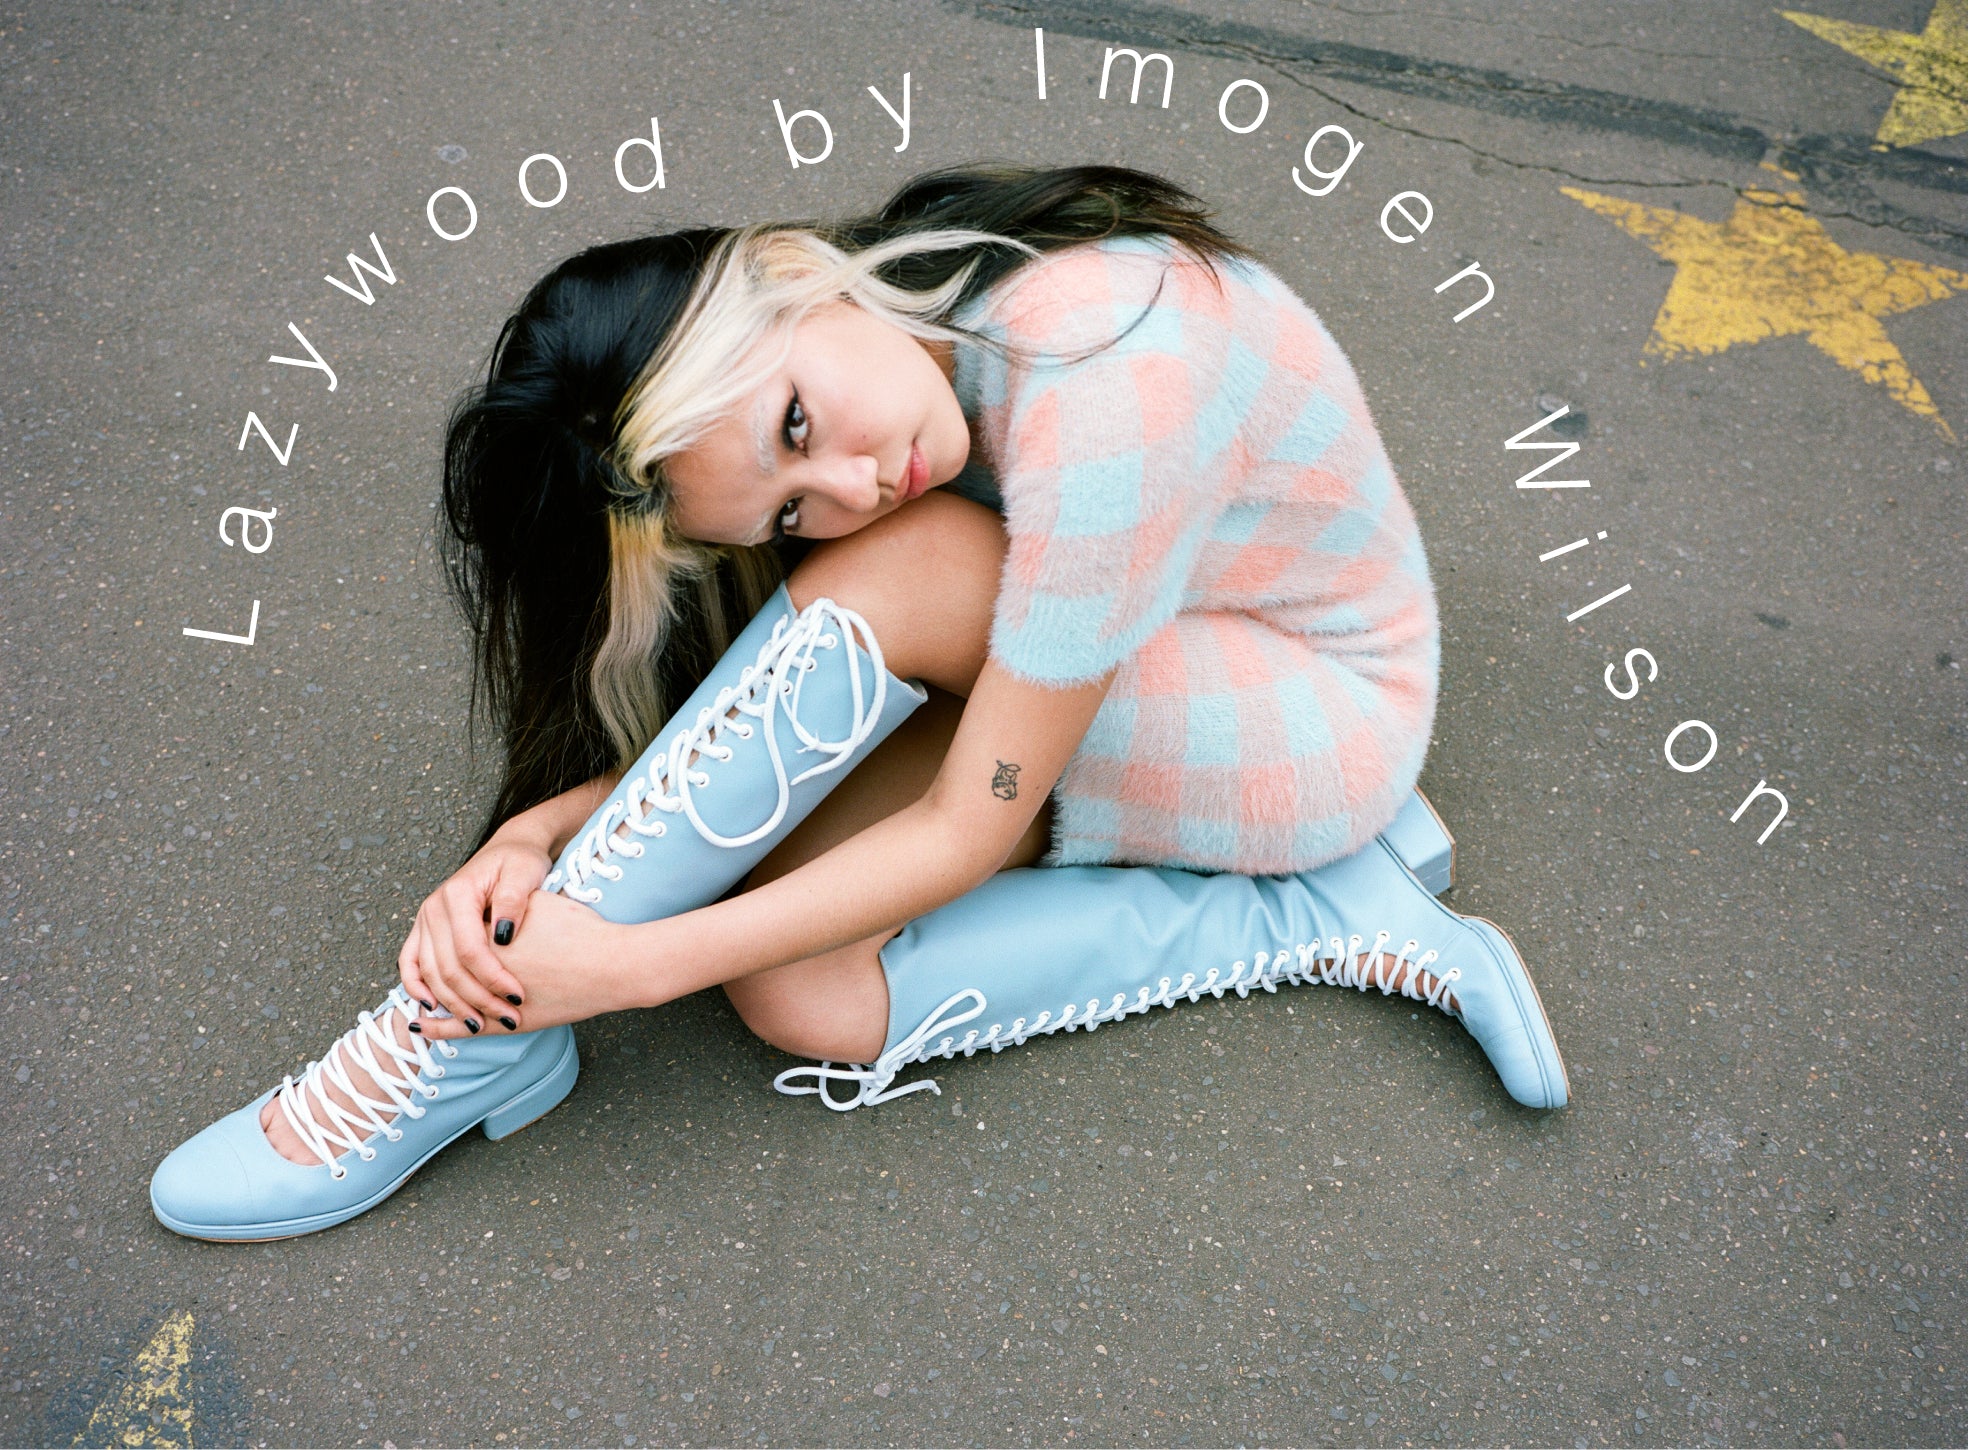 Lazywood by Imogen Wilson